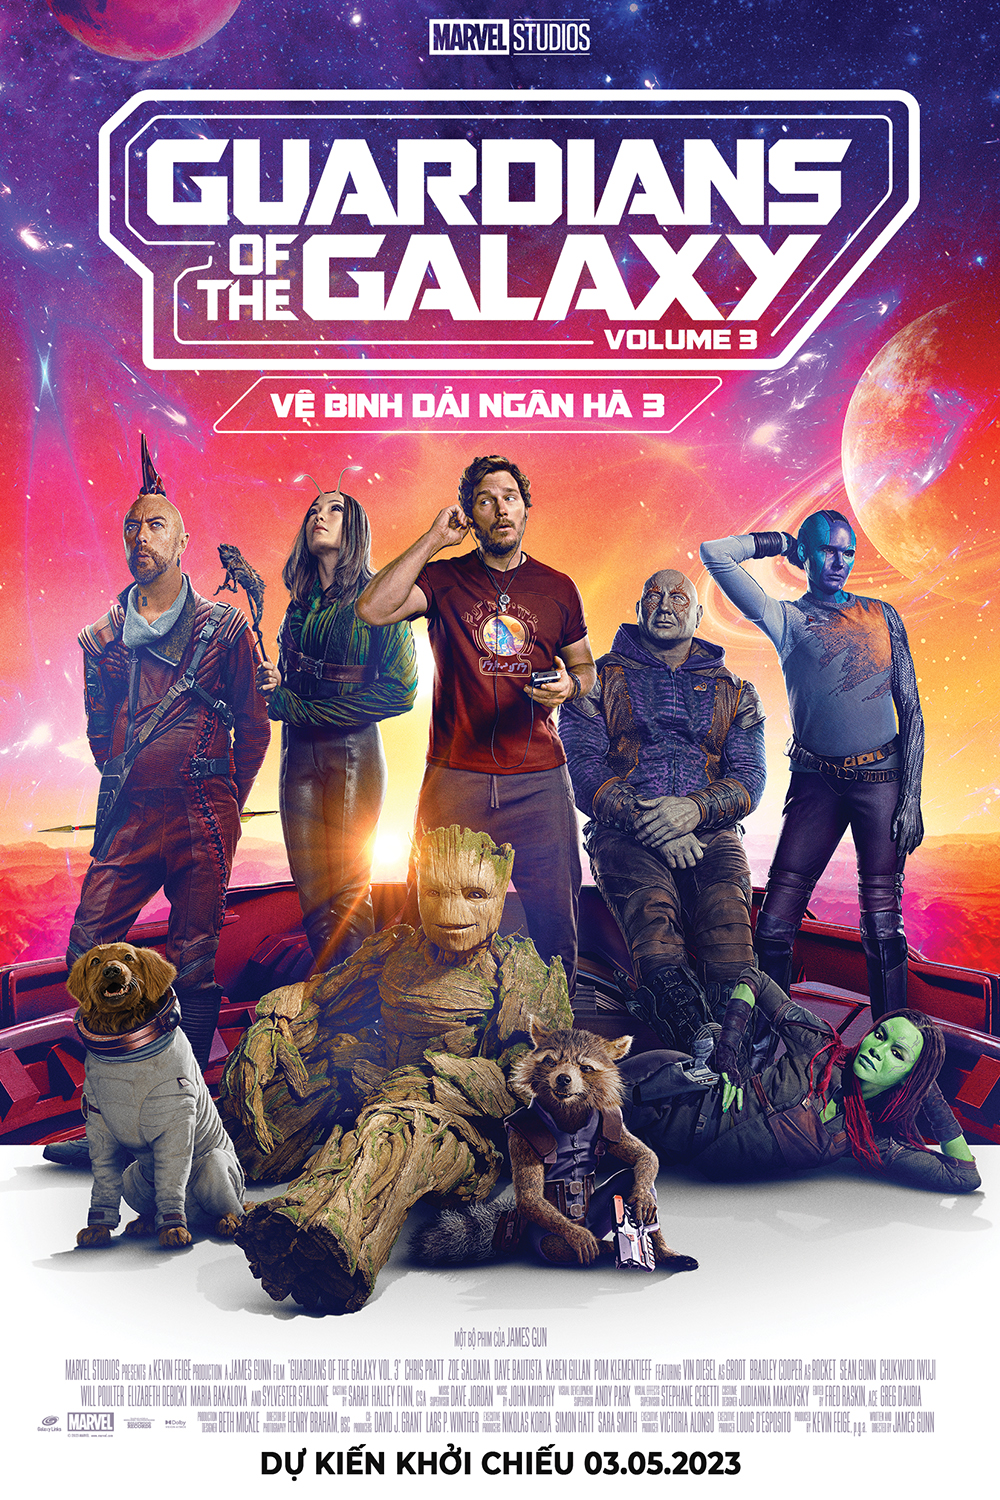 Chris Pratt phim mới: Vệ binh dải ngân hà 3 - Guardians of the Galaxy Vol. 3 (2023)